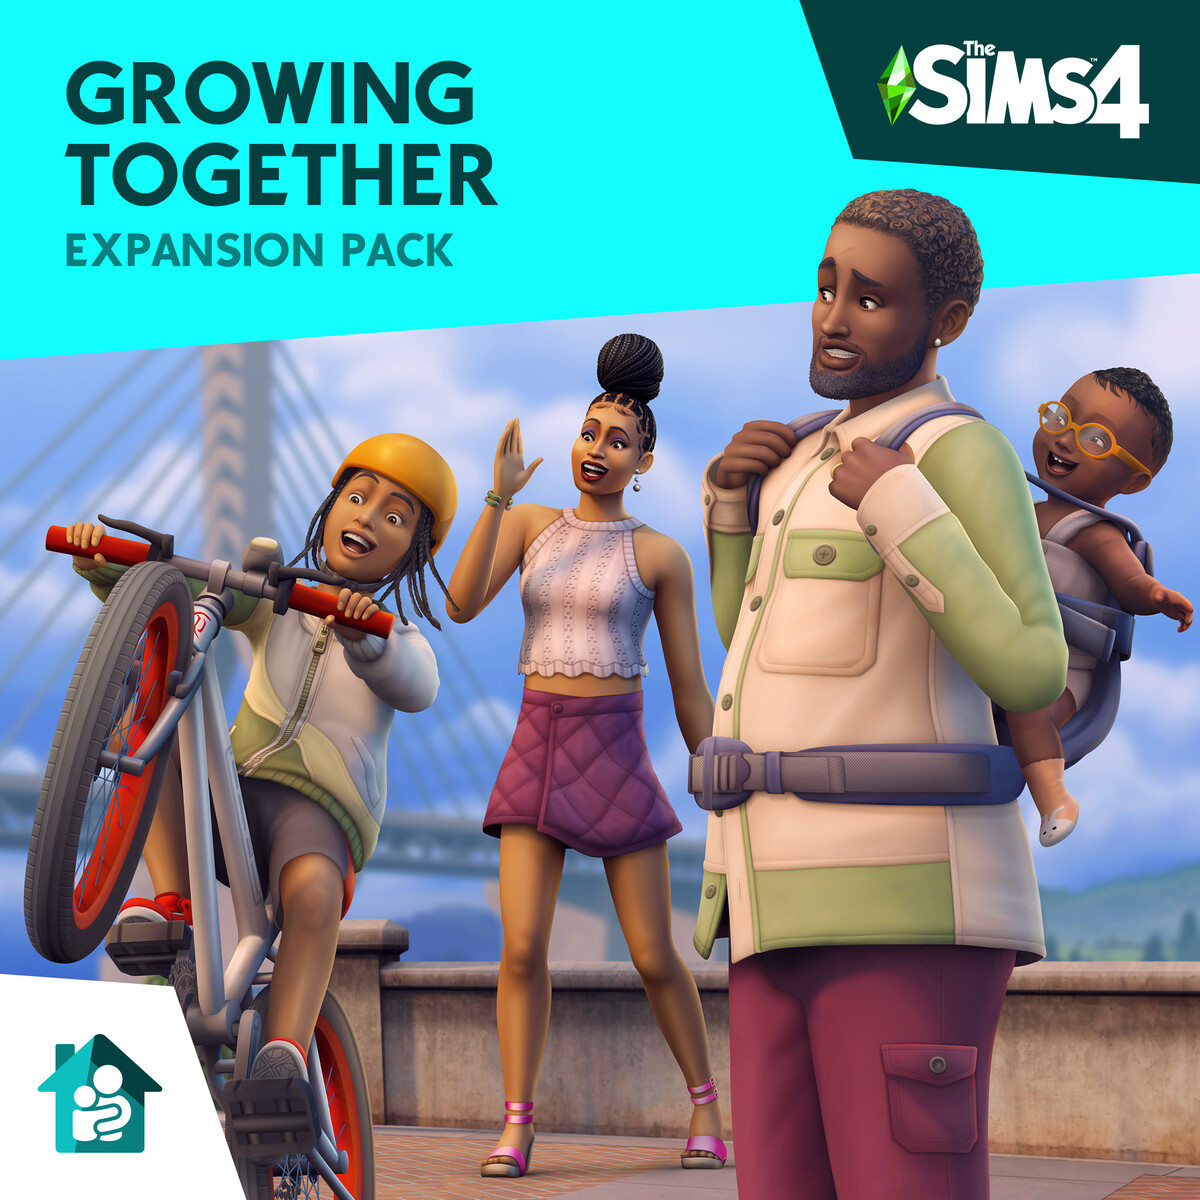 Electronic Arts จับแน็กชาลี ไตรรัตน์ มาแปลงโฉมกับเกม The Sims 4 และความสนุกของ HRK กับ KS139